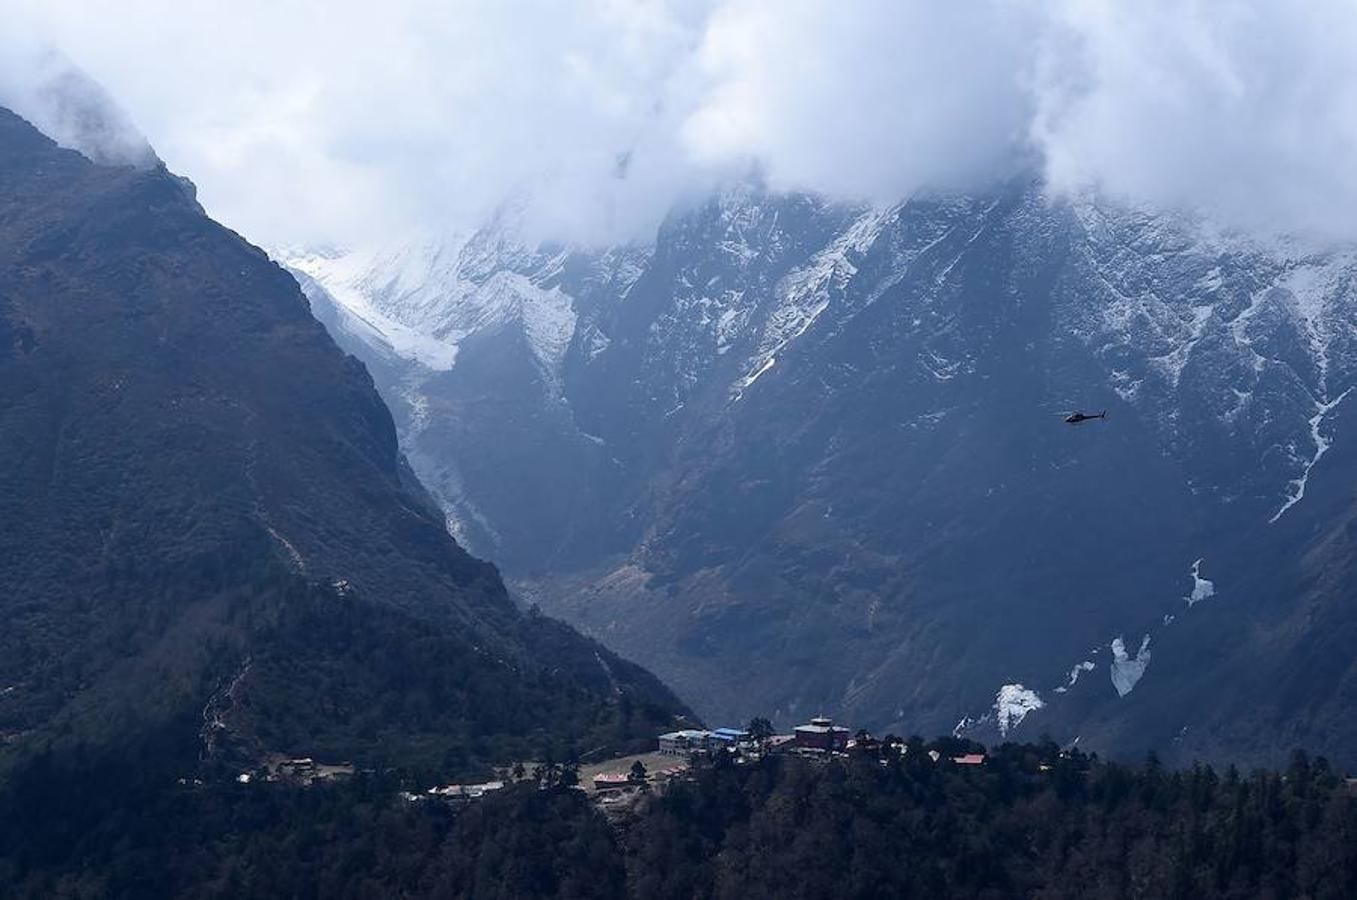 Comienza la temporada de escalada en el Himalaya. La ruta de subida a la cumbre acoge una gran cantidad de turistas que intenta ascender algún tramo del pico más alto del planeta. La imagen que más se repite estos días son grupos de excursionistas pasando por la aldea de Phortse a Pheriche en dirección al Everest.